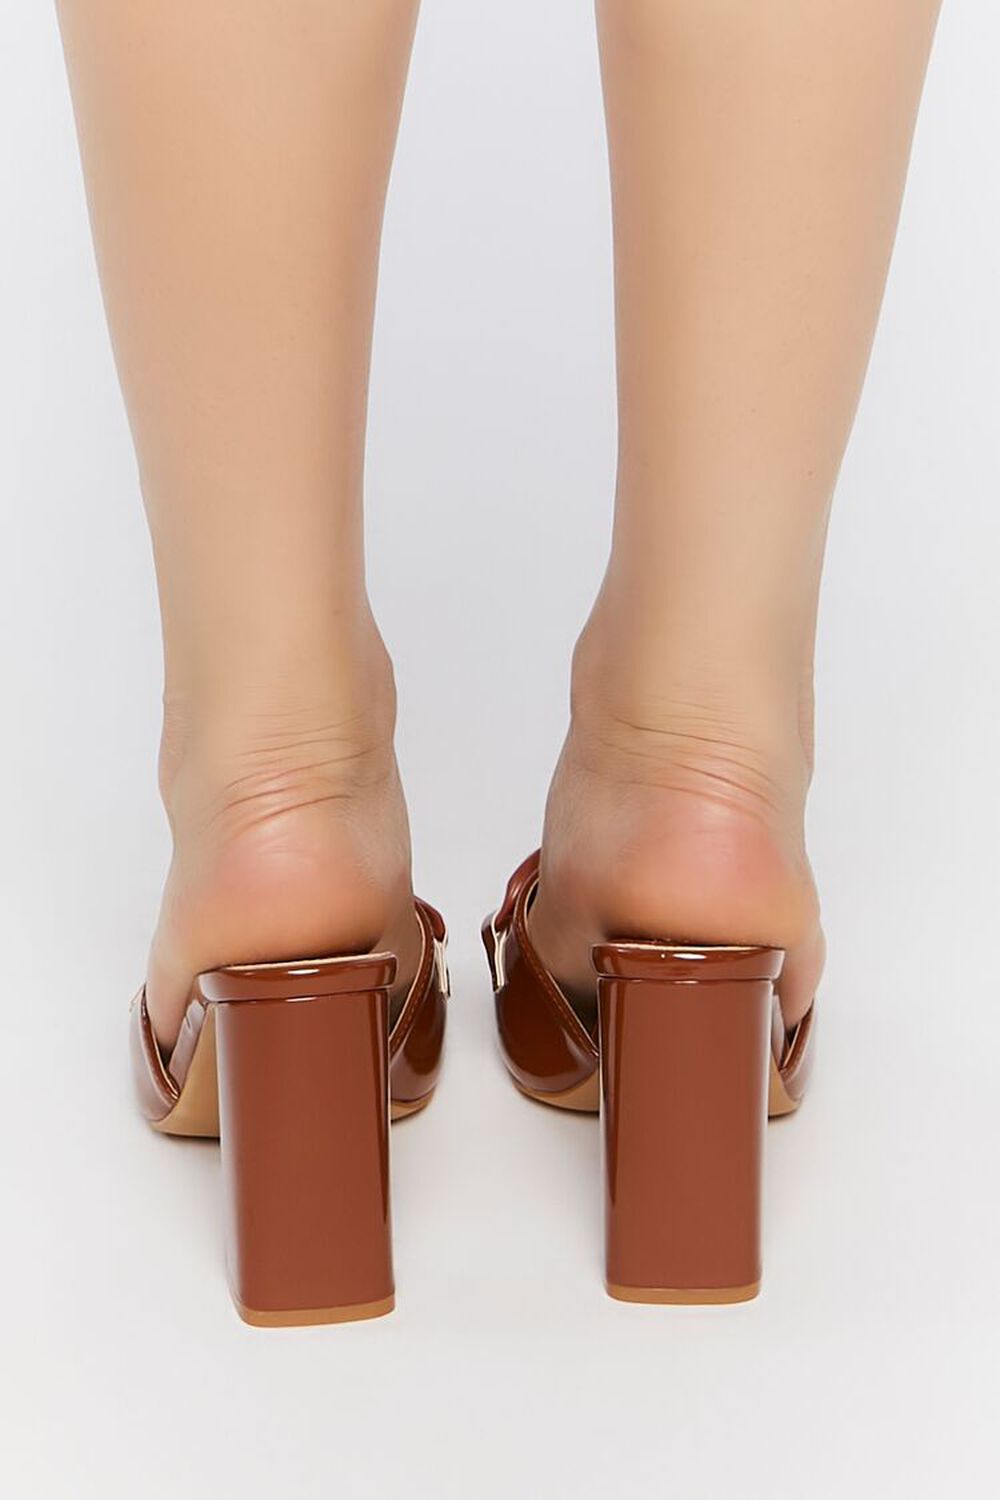 BROWN Open-Toe Chain Heels, image 3